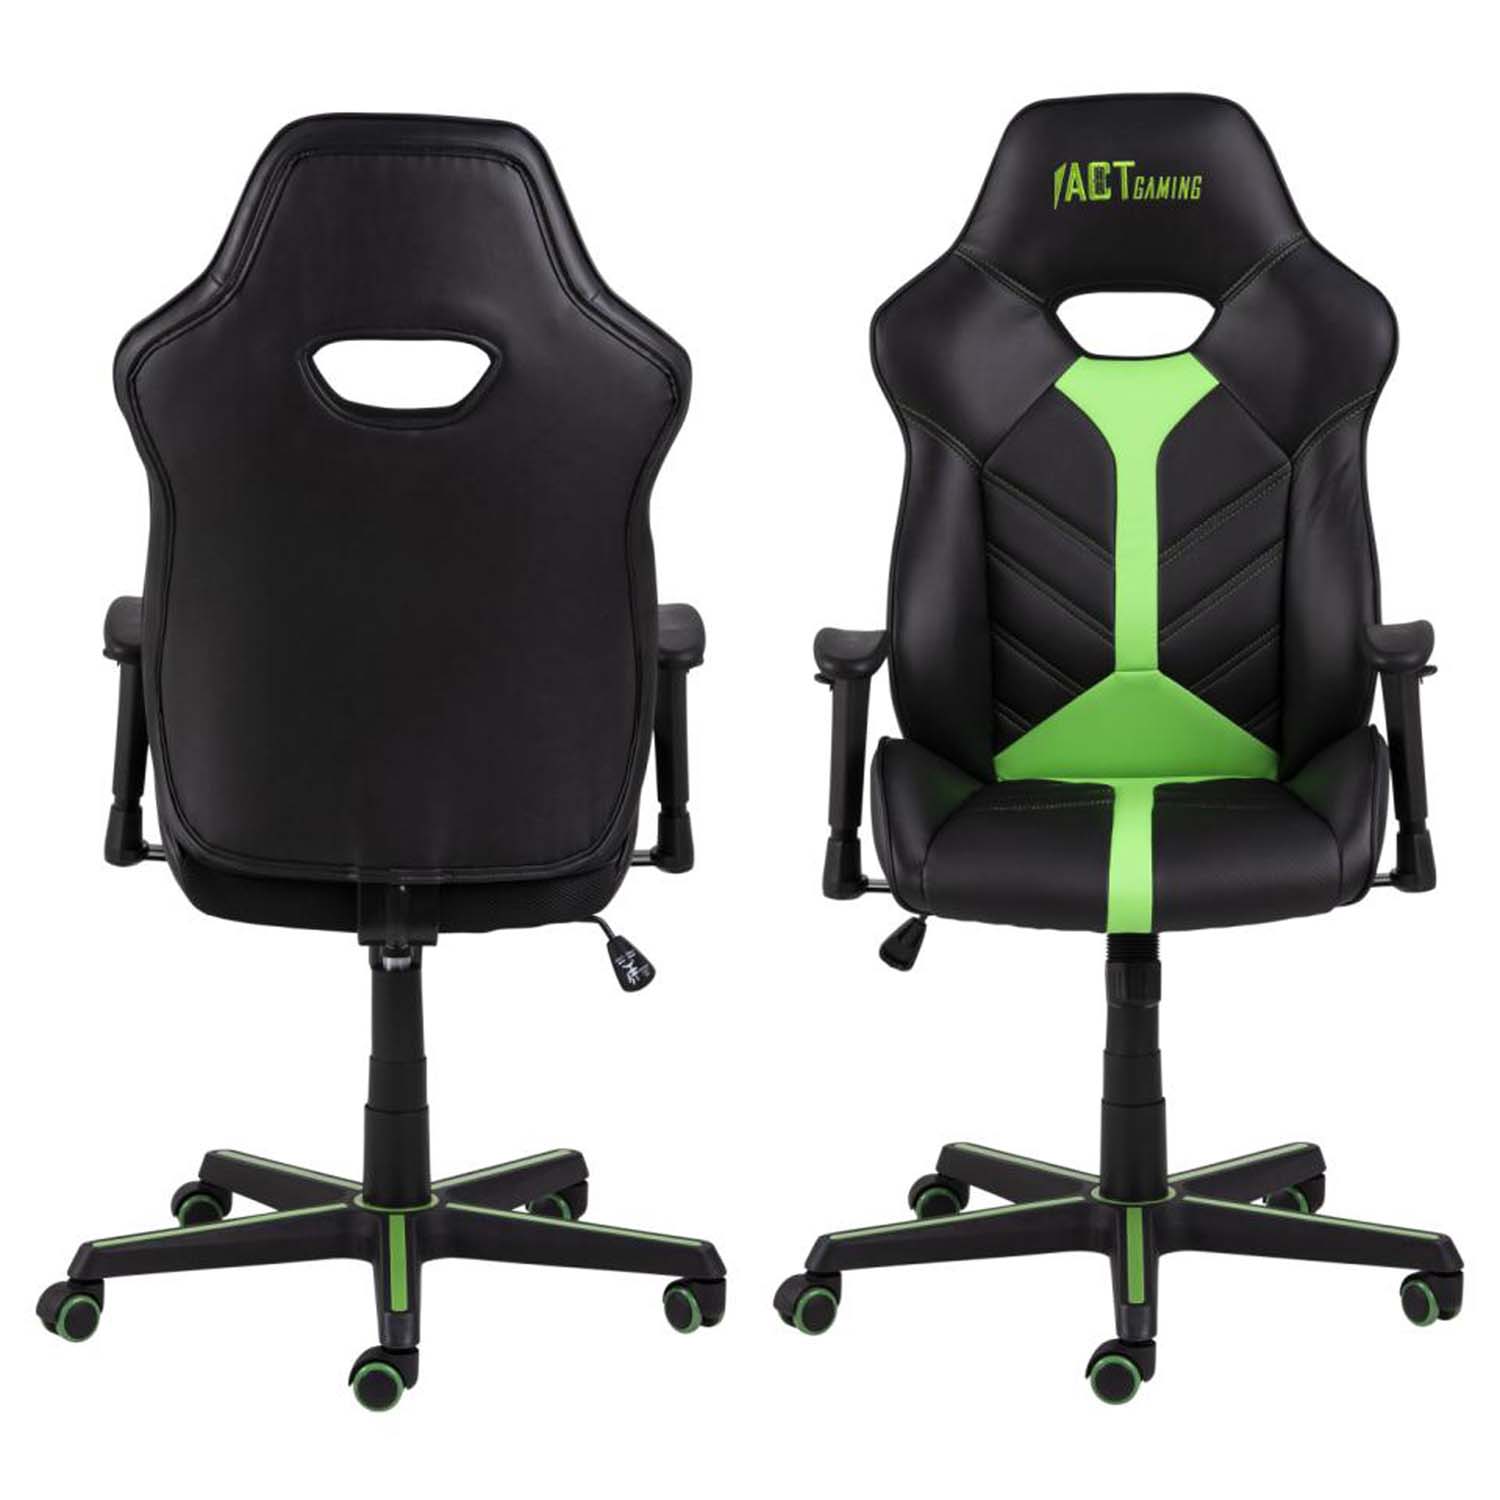 Billede af ACT NORDIC Cobblestone gamer stol, m. justerbare armlæn - grøn/sort PU og grøn/sort nylon